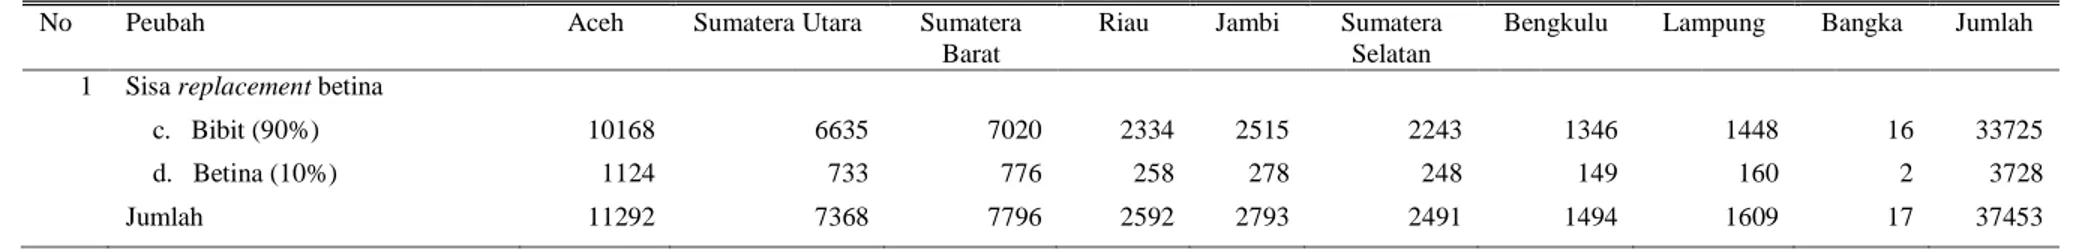 Tabel 6. Rincian sisa replacement kerbau di Sumatera berdasarkan provinsi 